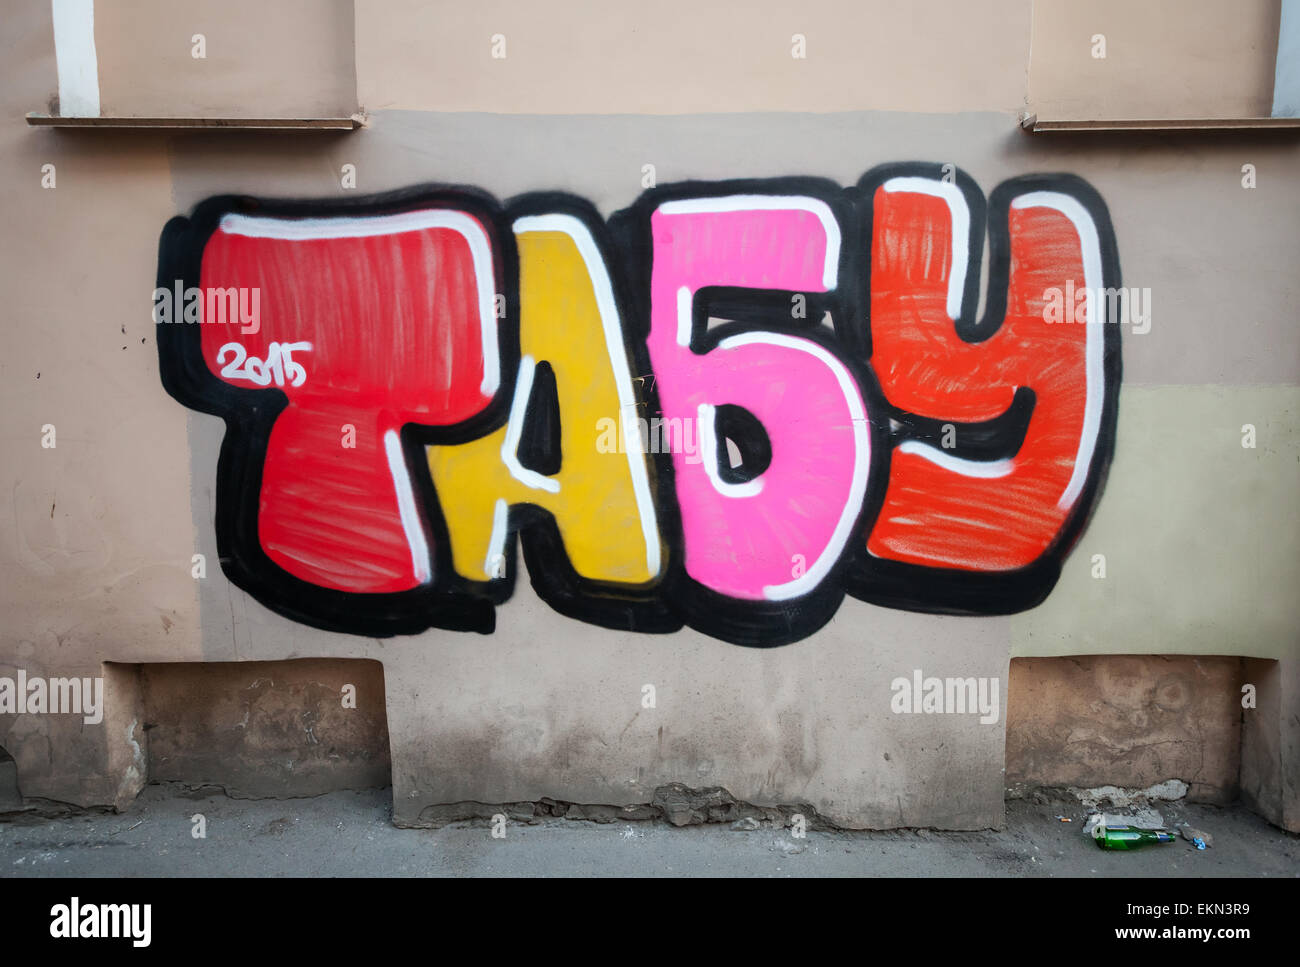 Saint-pétersbourg, Russie - 6 Avril, 2015 : texte graffiti colorés sur le mur, tabou signifie en russe. Vasilievsky island Banque D'Images